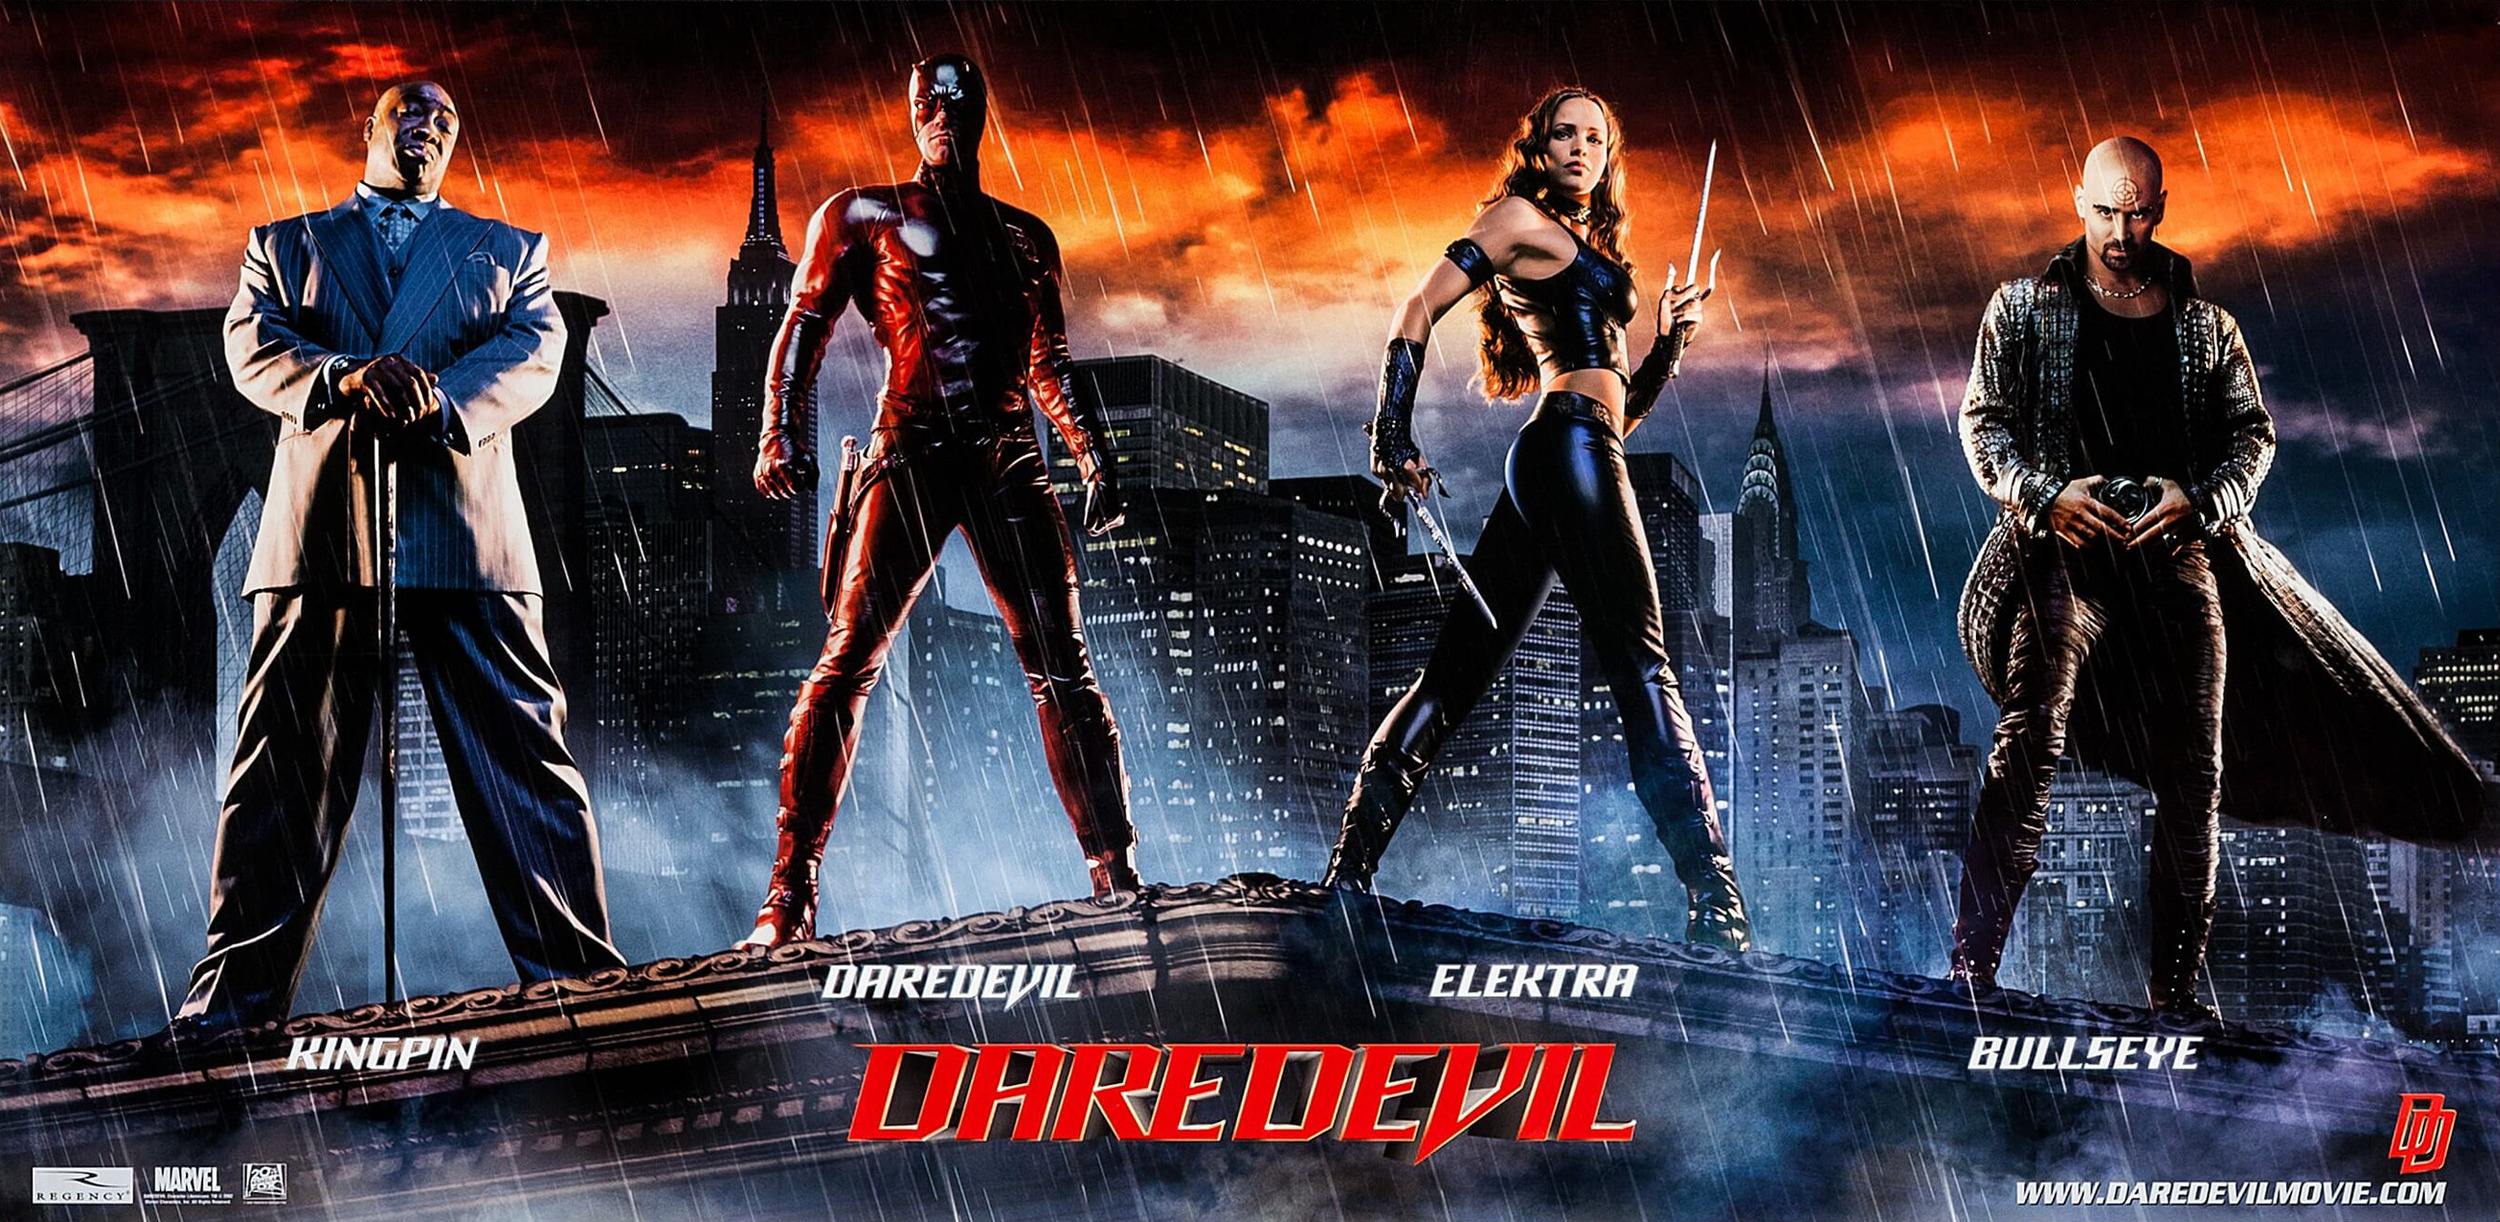 Mega Sized Movie Poster Image for Daredevil (#3 of 3)